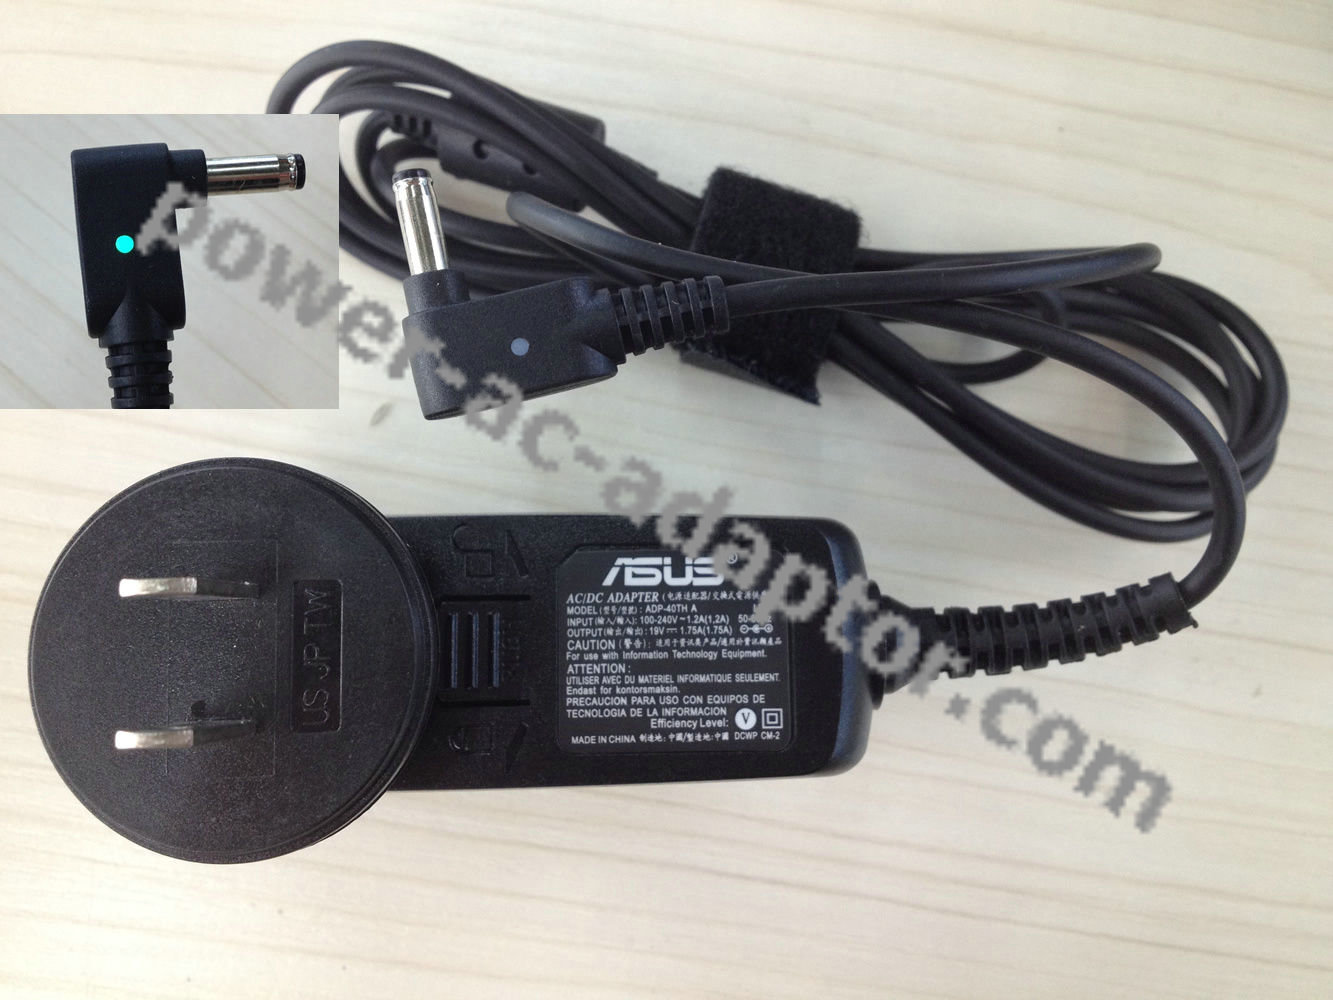 ASUS VivoBook X201E-KX097H S200E-0143KULV987 Adapter Cord for